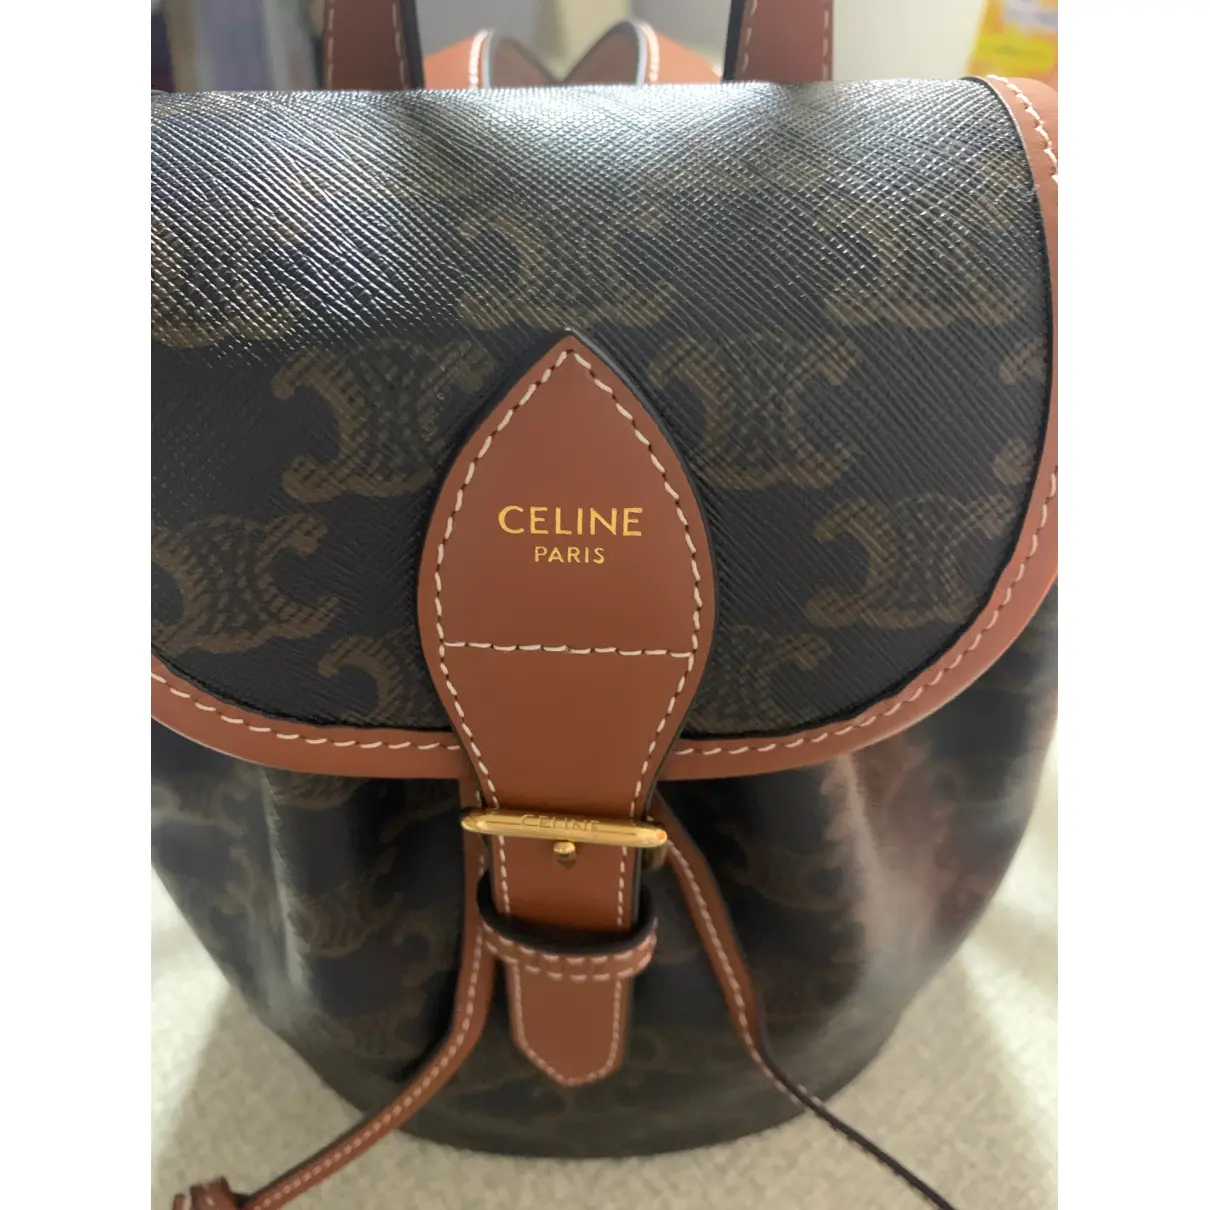 Buy Celine Folco leather backpack online - Vintage